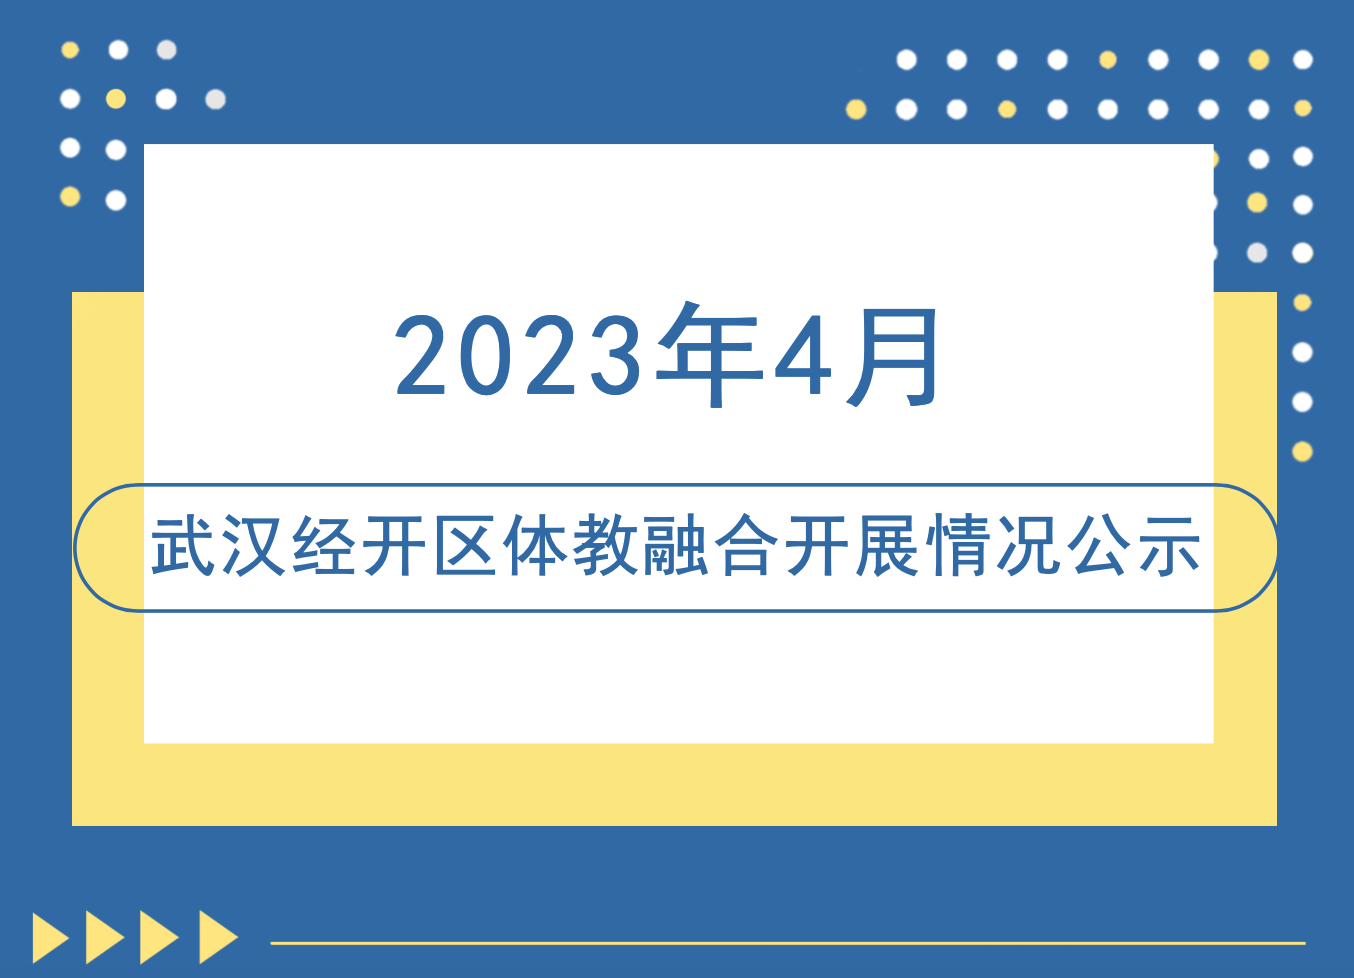 【体教融合】2023年4月武汉经开区体教融合开展情况公示